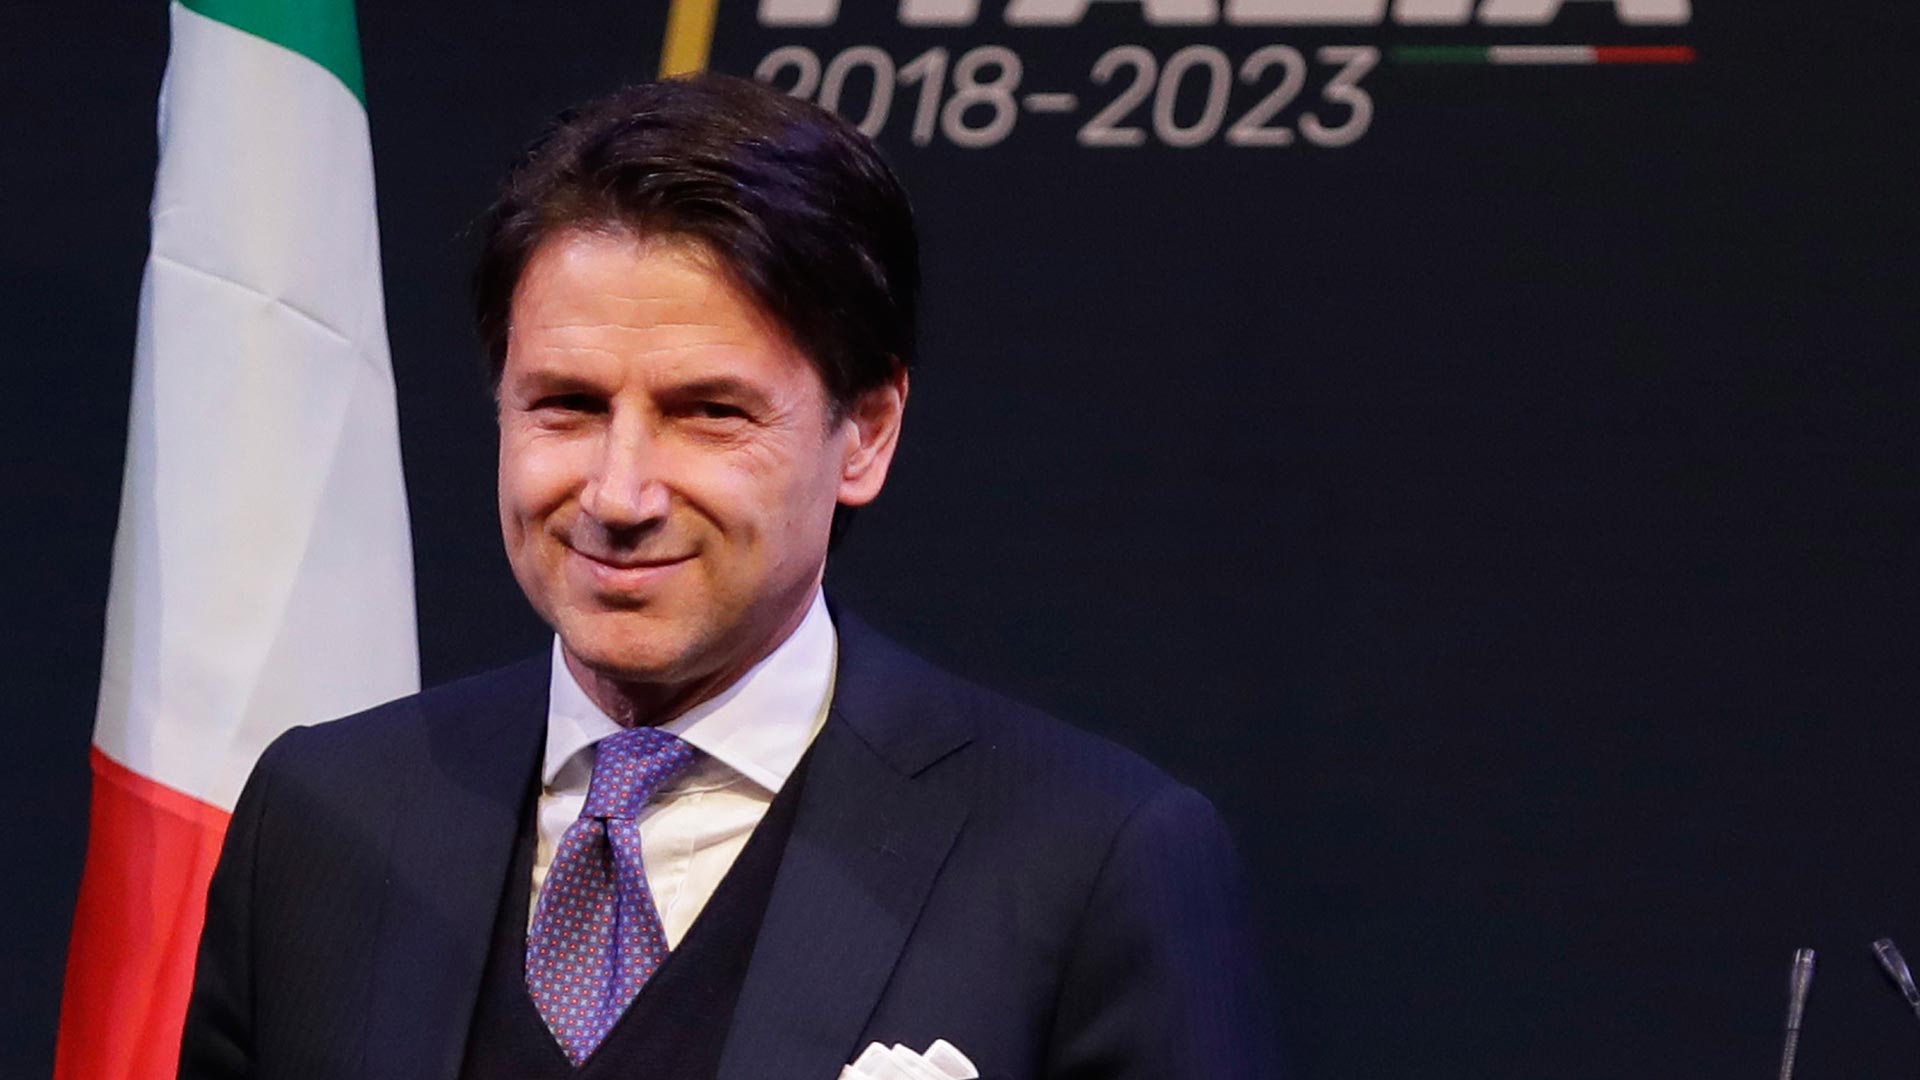 La Liga Norte y M5S proponen a Giuseppe Conte como candidato a primer ministro de Italia